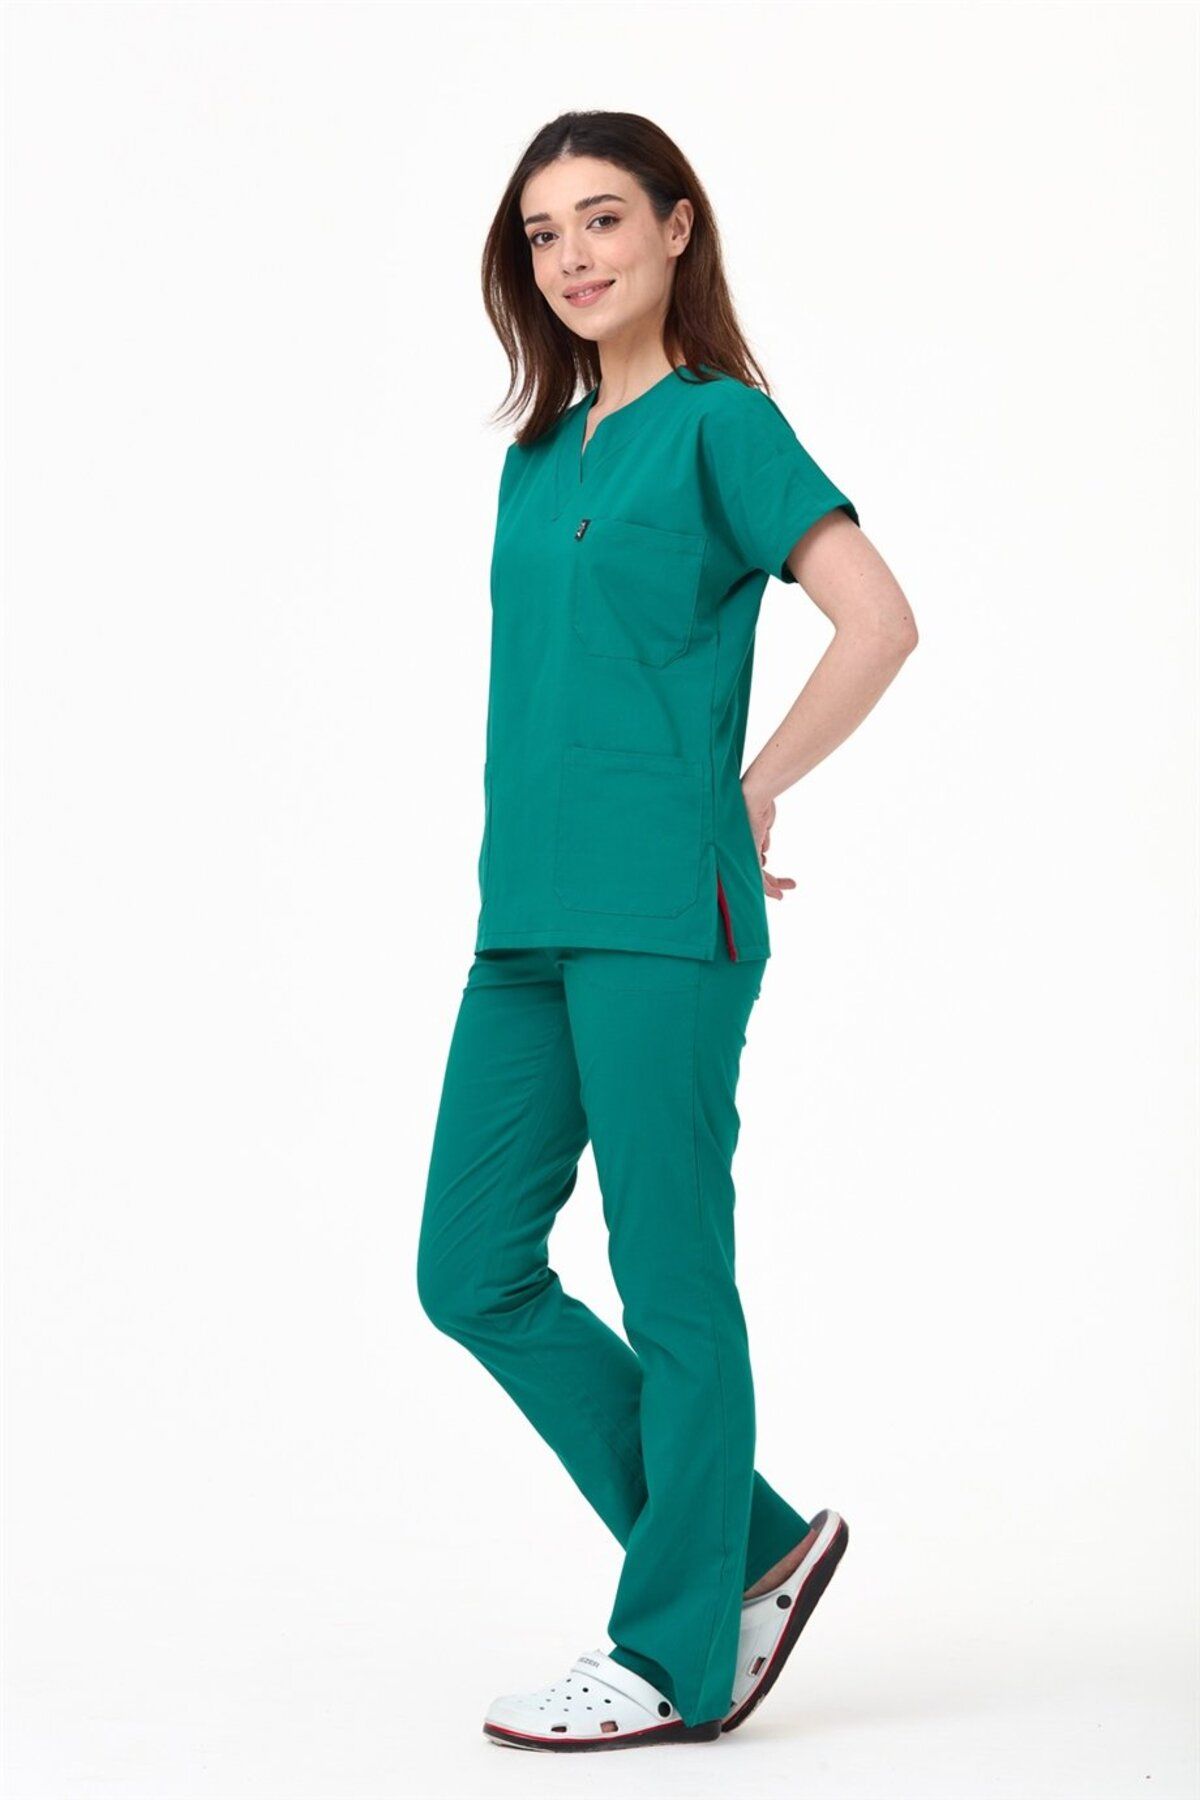 Çatı Medikal Ultralycra Spaniard - Likralı Doktor Hemşire Forma Takımı (KADIN), Cerrahi Yeşil